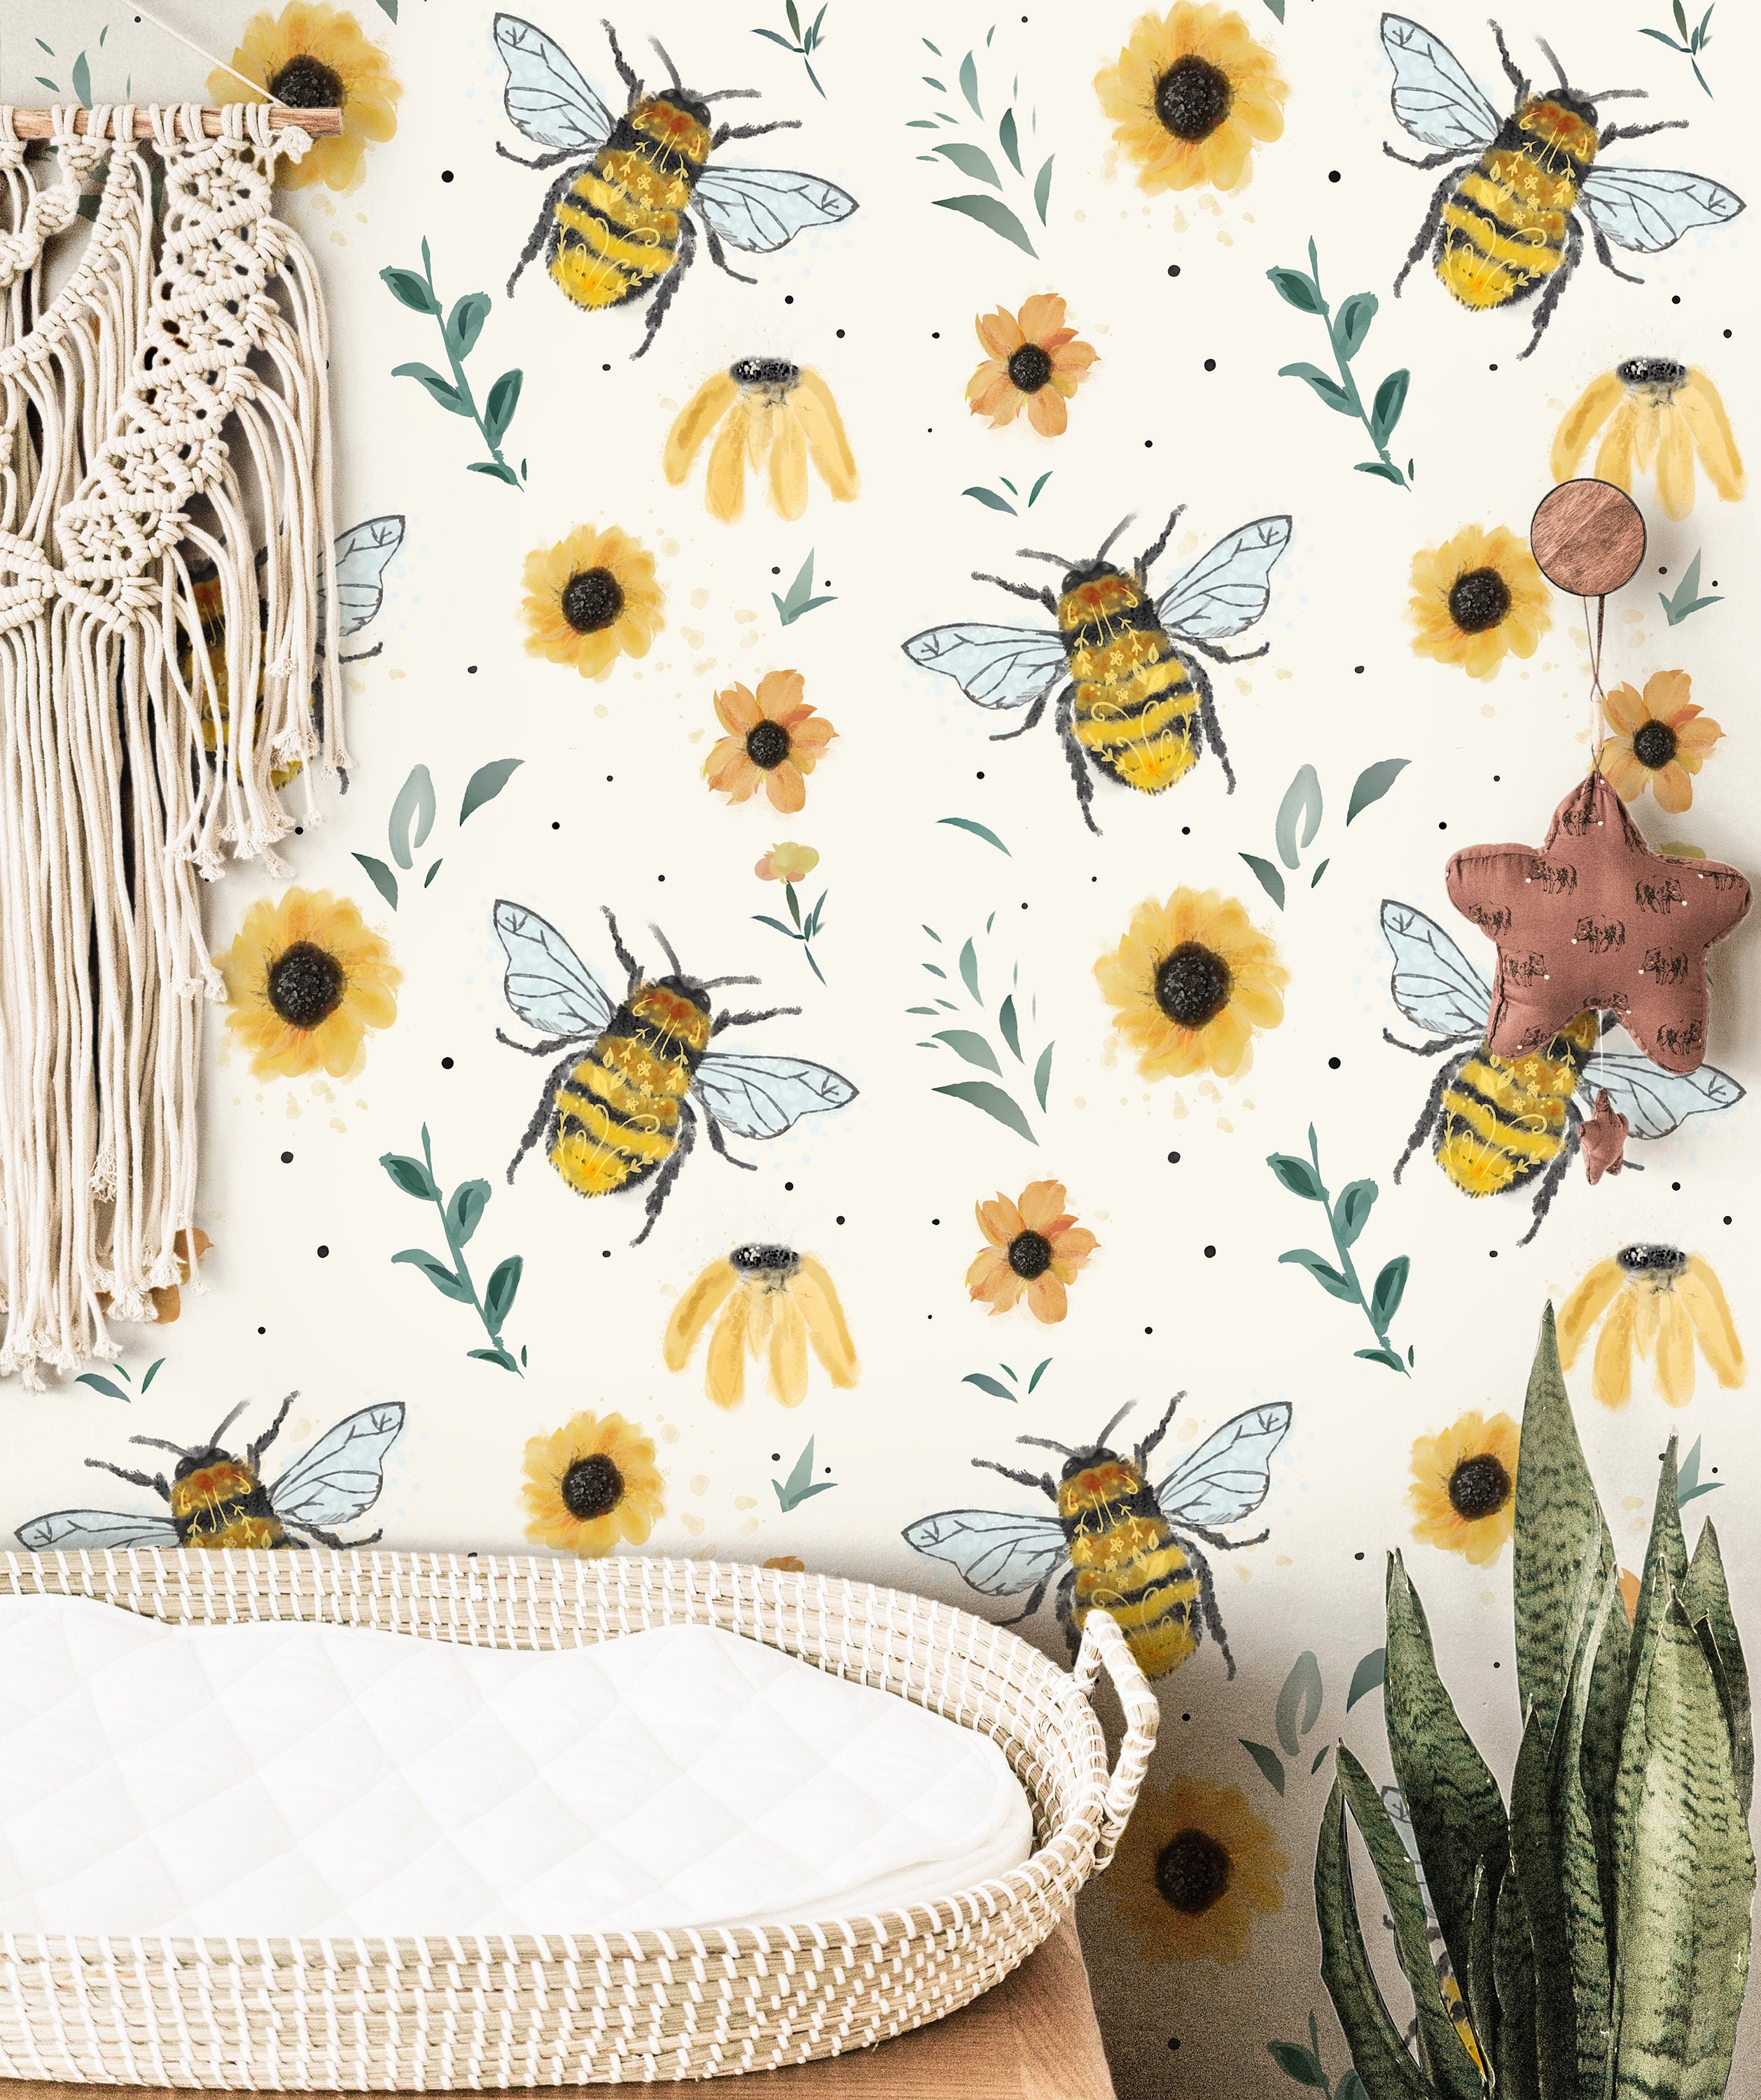 Bee Bumblebee Wallpaper Vector Images (over 1,200)